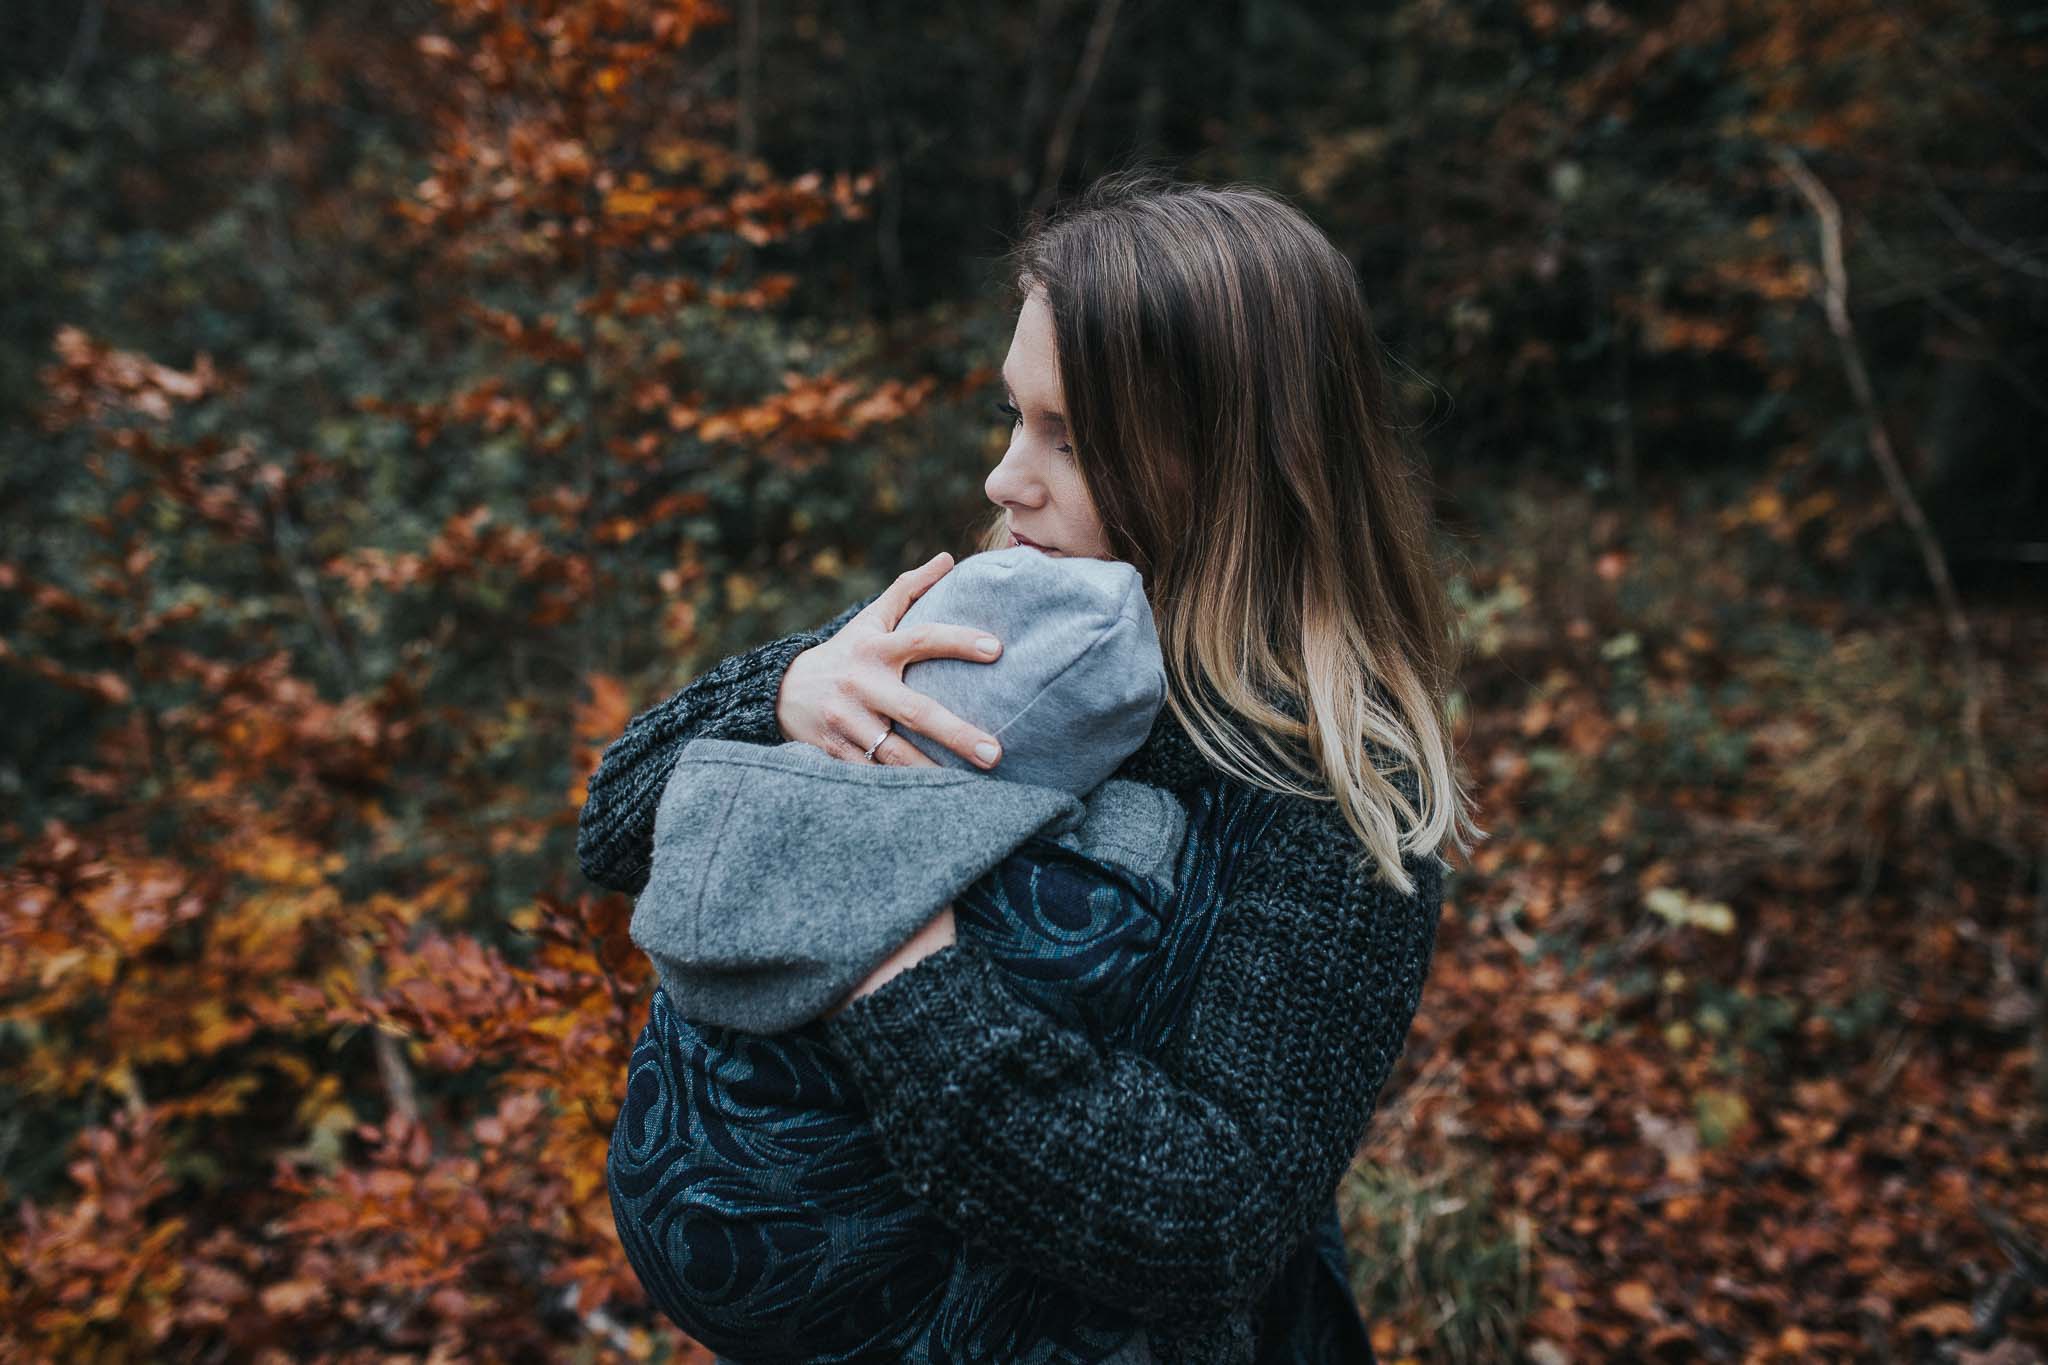 Eine Mutter trägt ihr Kind in einem Tragetuch und hält es liebevoll fest